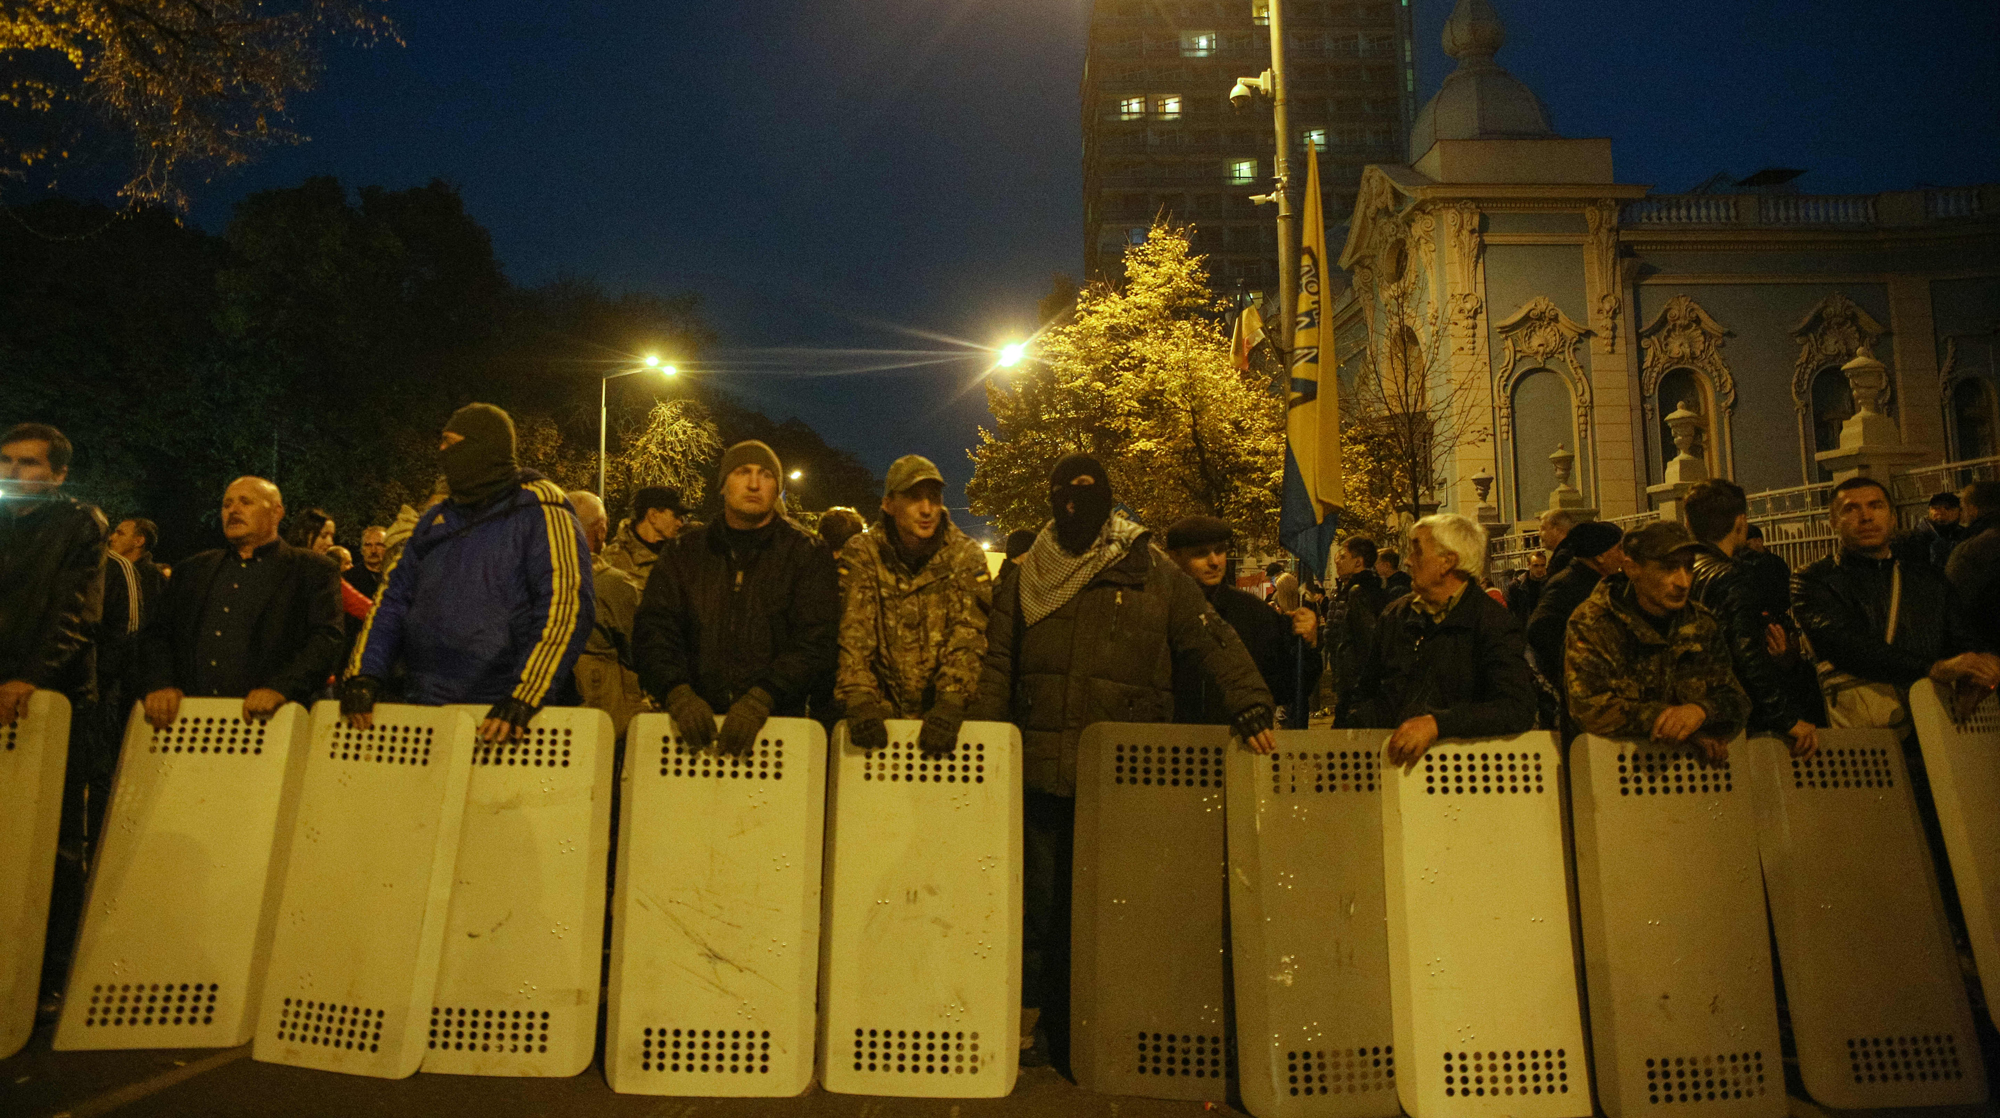 Правоохранительные органы начали применять слезоточивый газ Фото: © GLOBAL LOOK press/Sergii Kharchenko